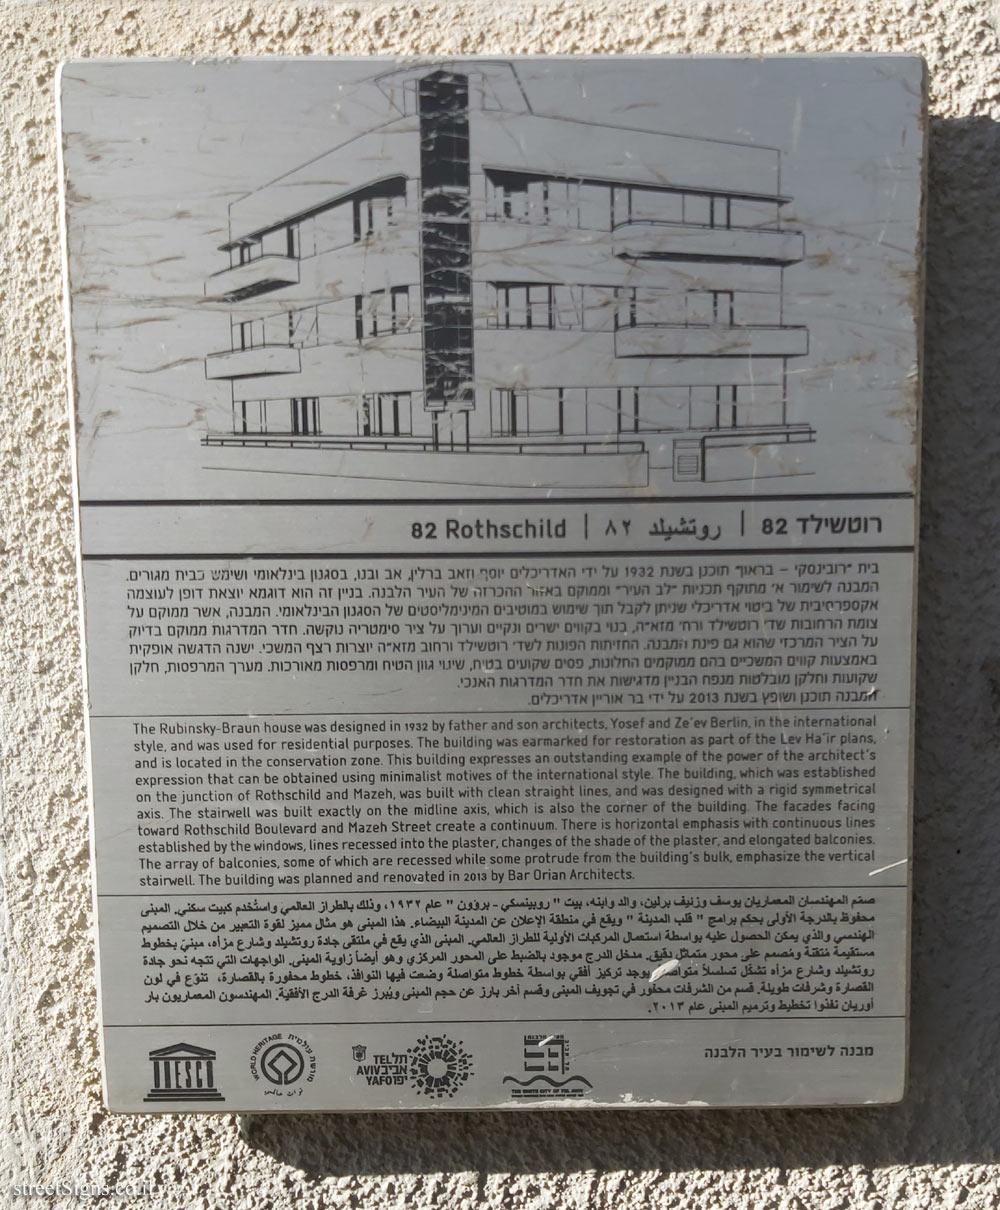 Tel Aviv - buildings for conservation - Rothschild 82